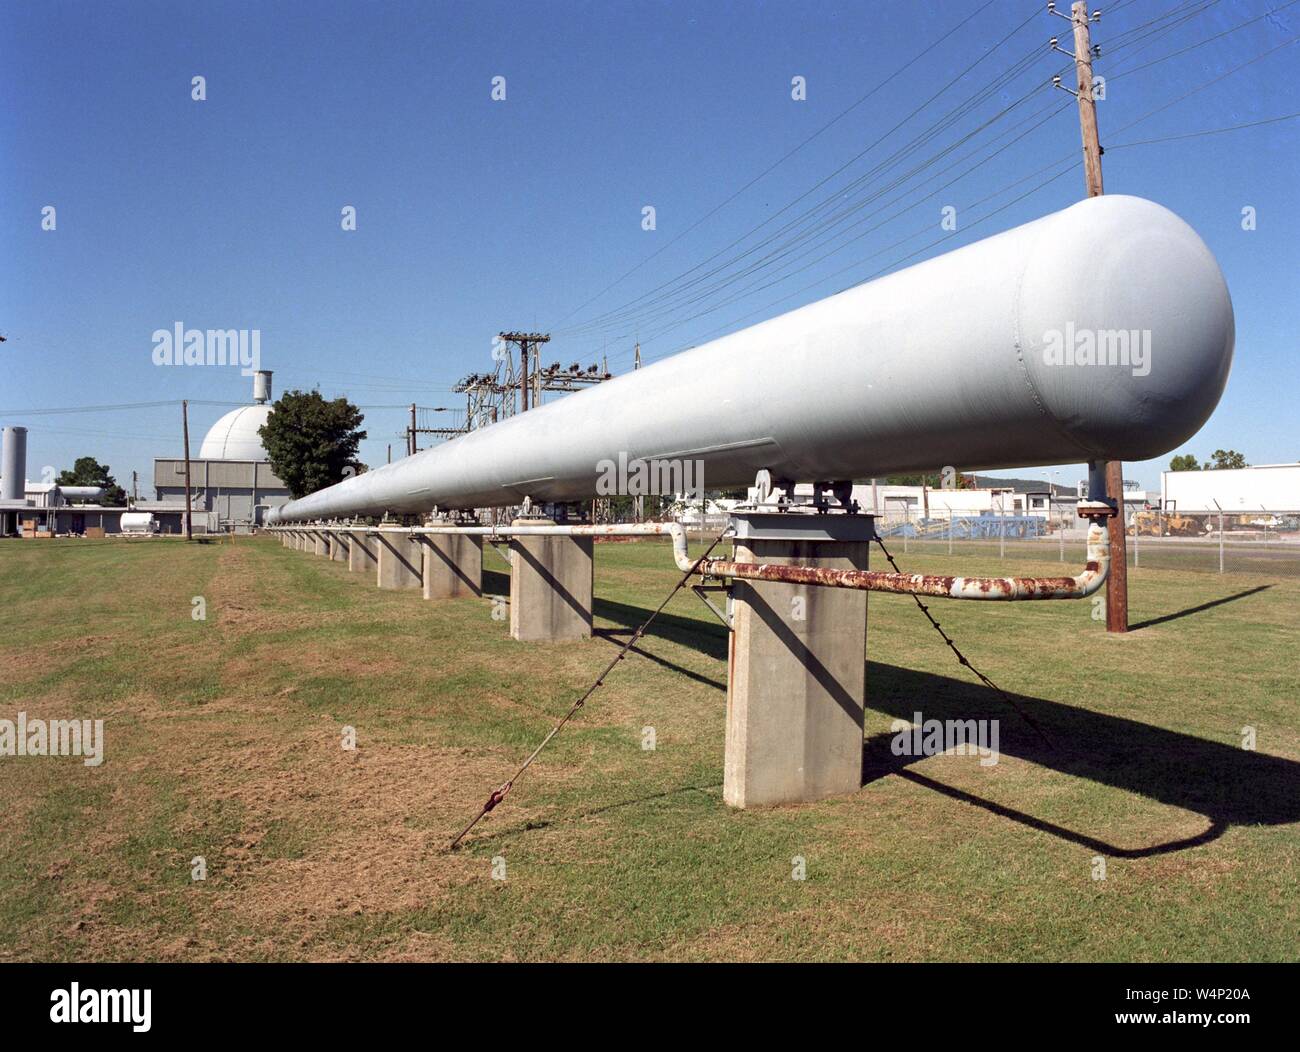 Elevato numero di Reynolds galleria del vento di 390 piedi di tubo lungo a George C. Marshall Space Flight Center di Huntsville, Alabama, 1990. Immagine cortesia Nazionale Aeronautica e Spaziale Administration (NASA). () Foto Stock